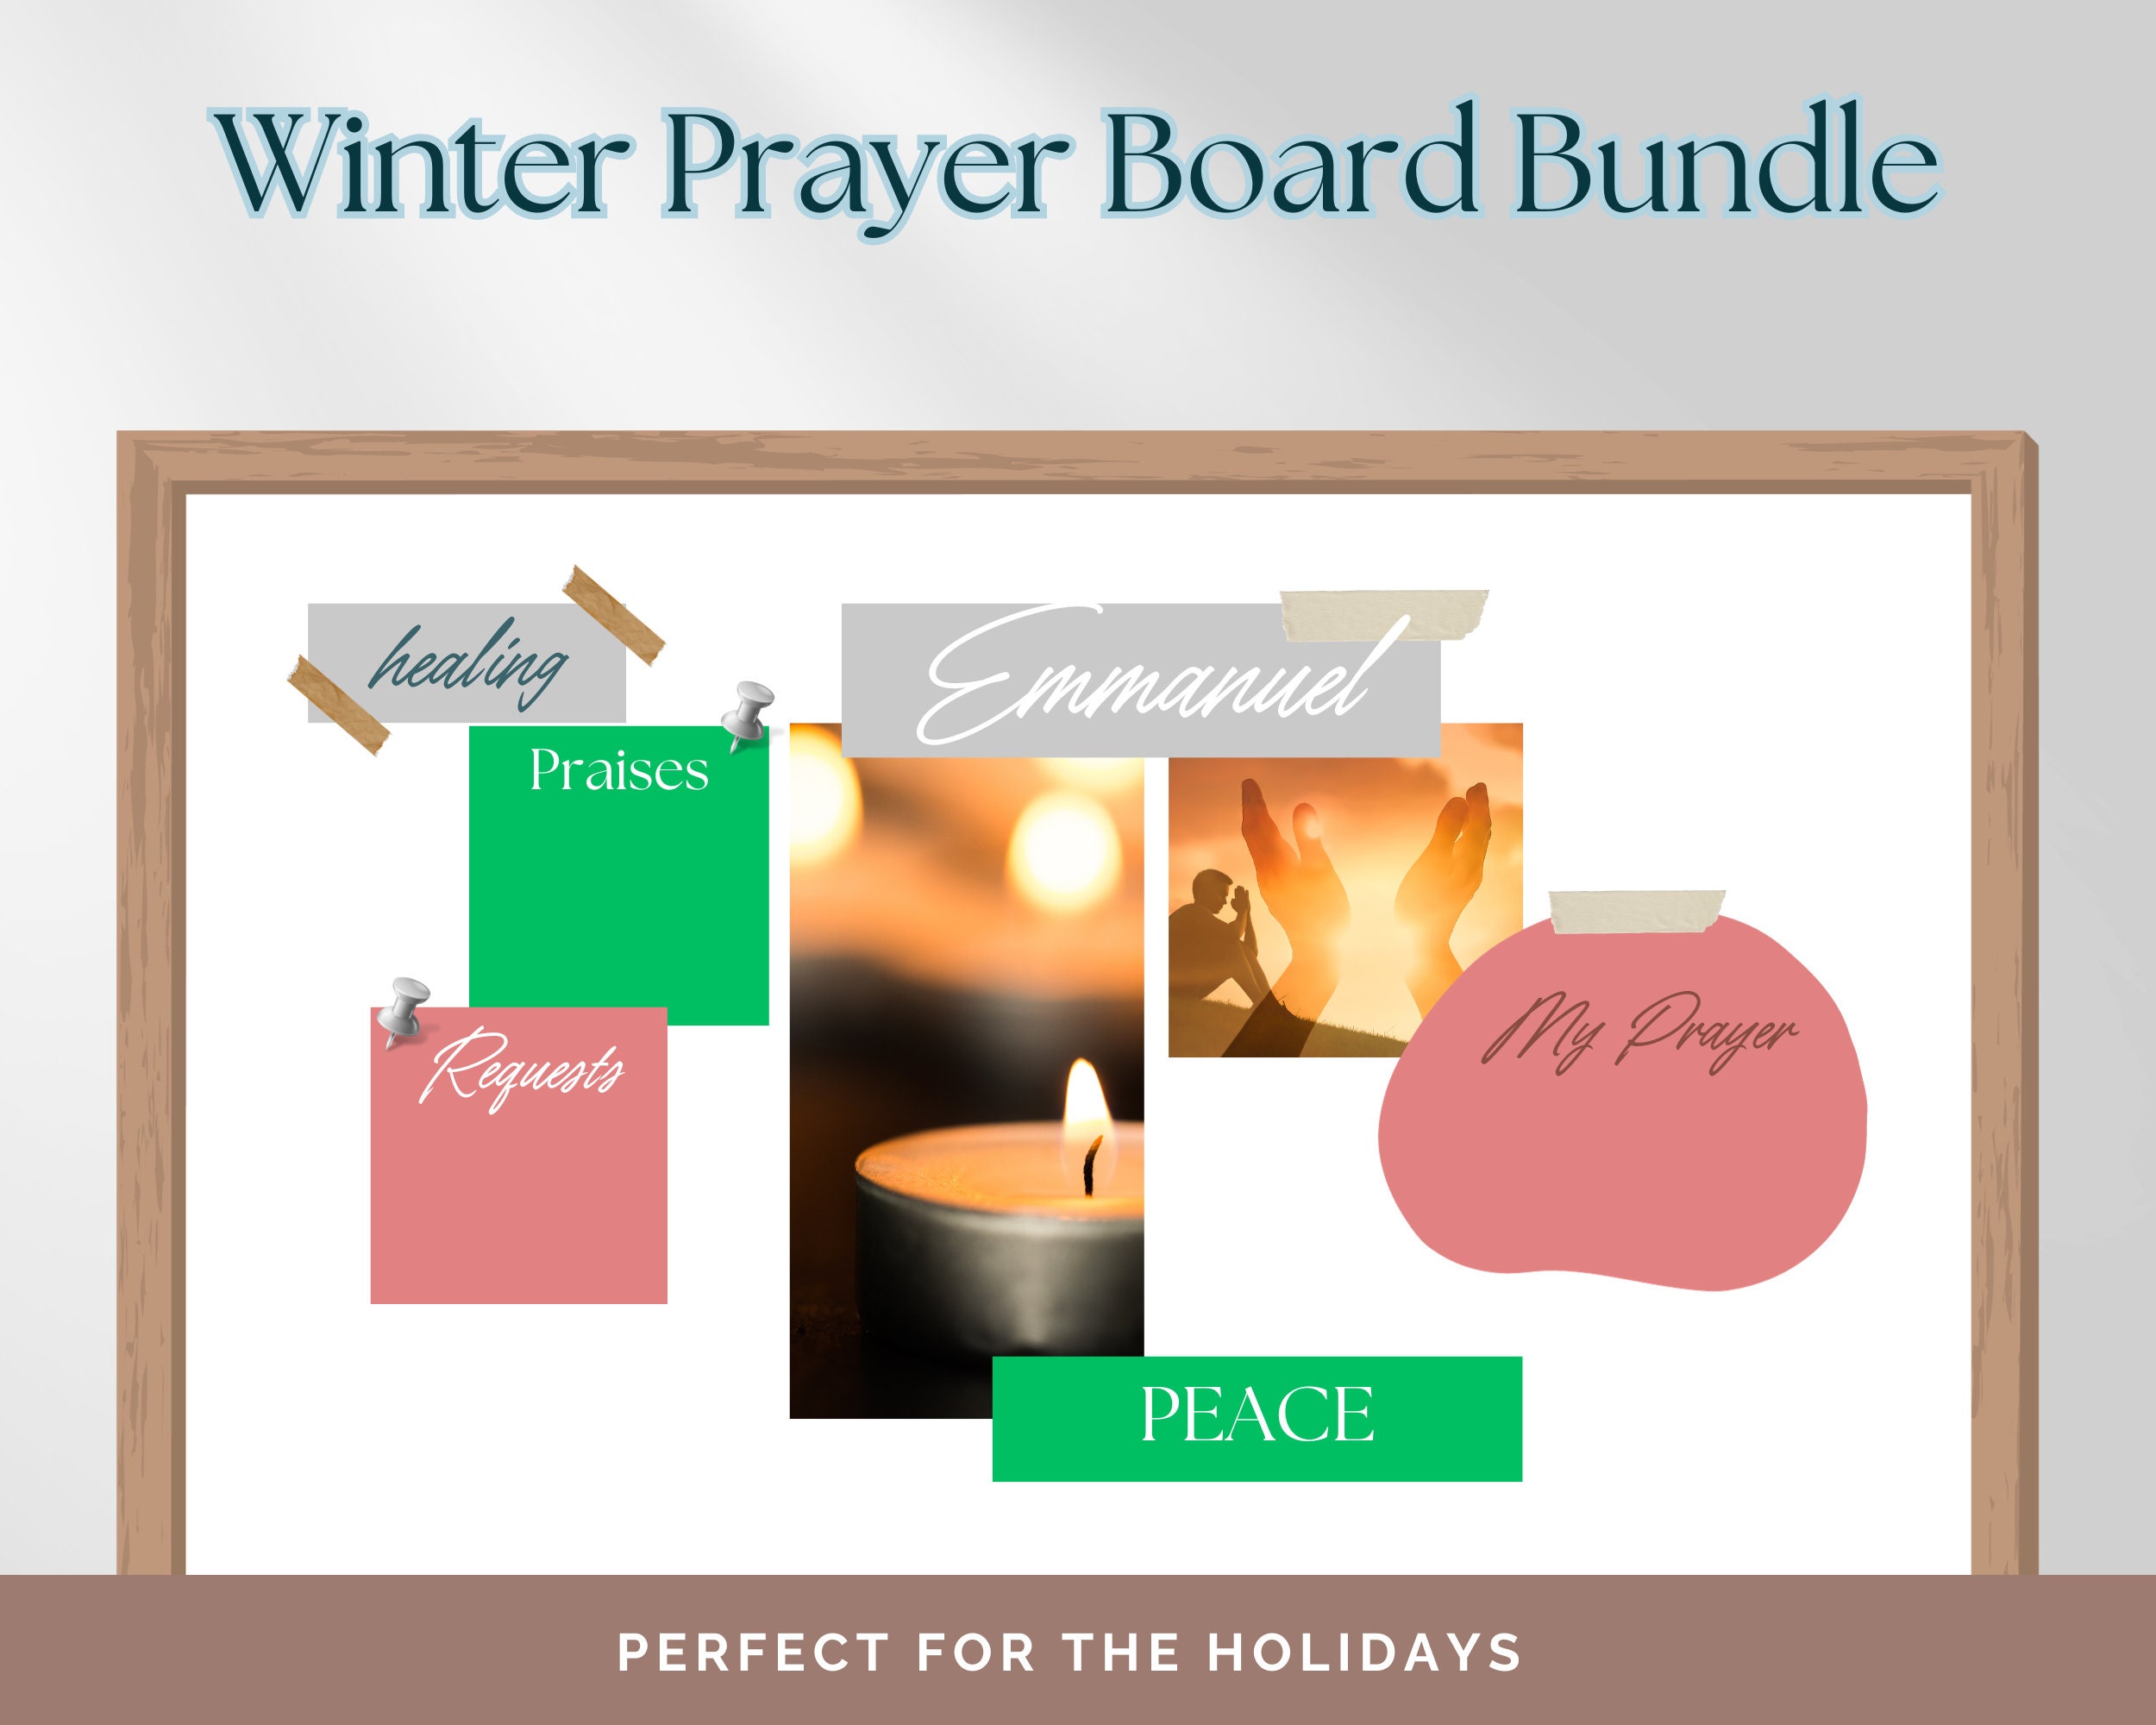 Prayer Board Kit Prayer Board Printable Daily Prayer Board 